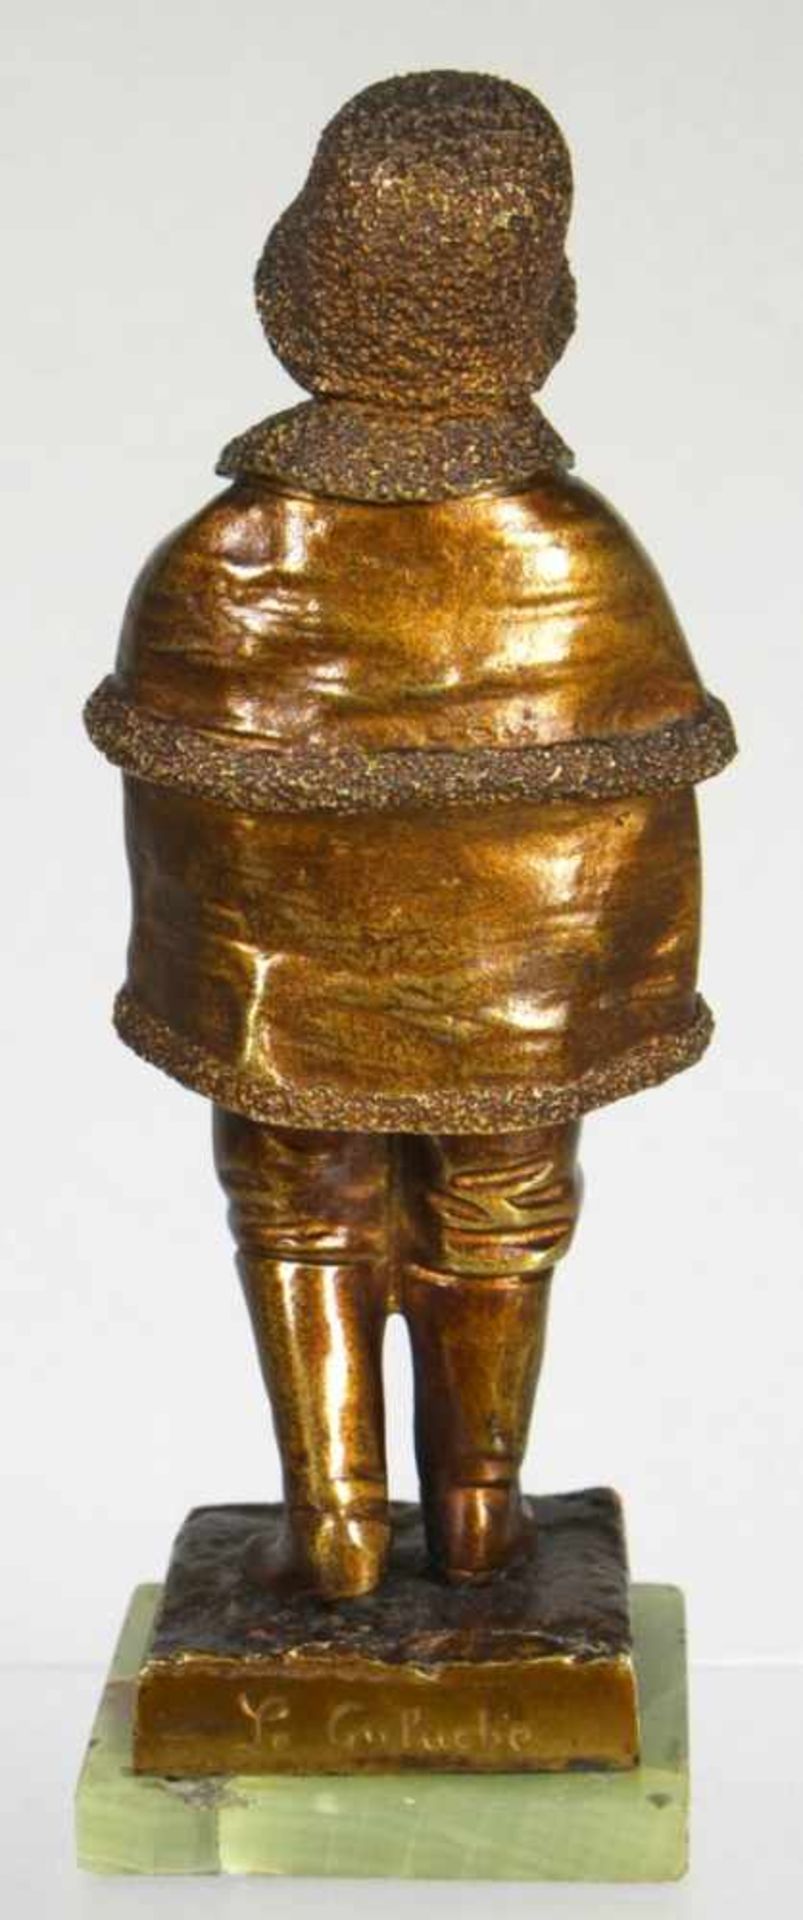 Bronze-Plastik, "Mädchen mit Mantel und Hut", Le Guluche, Joseph, französischer Bildhauer1849 - - Bild 2 aus 3